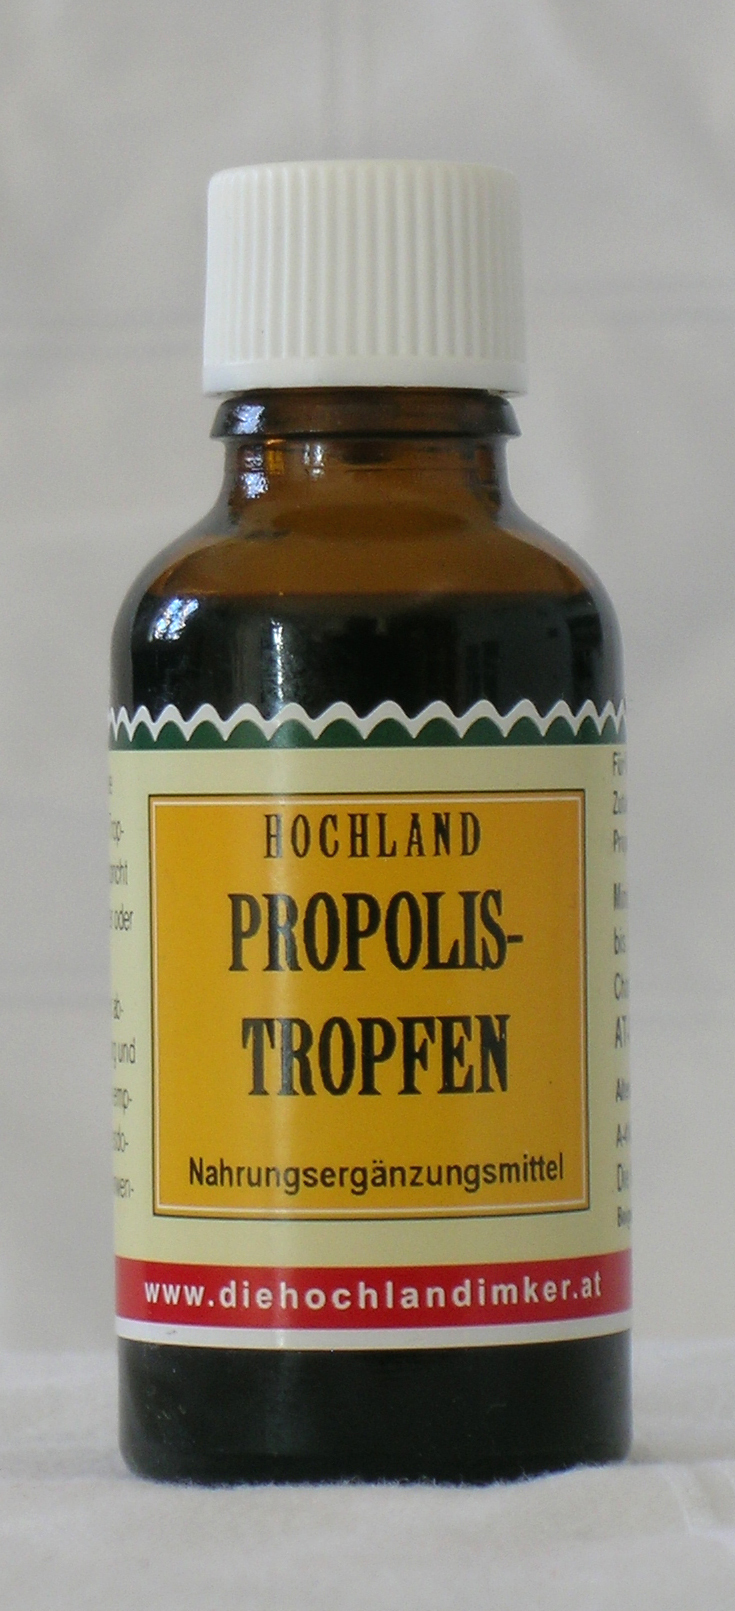 Das Propolis (Kittharz) der Bienen gelöst in biologischem Alkohol.